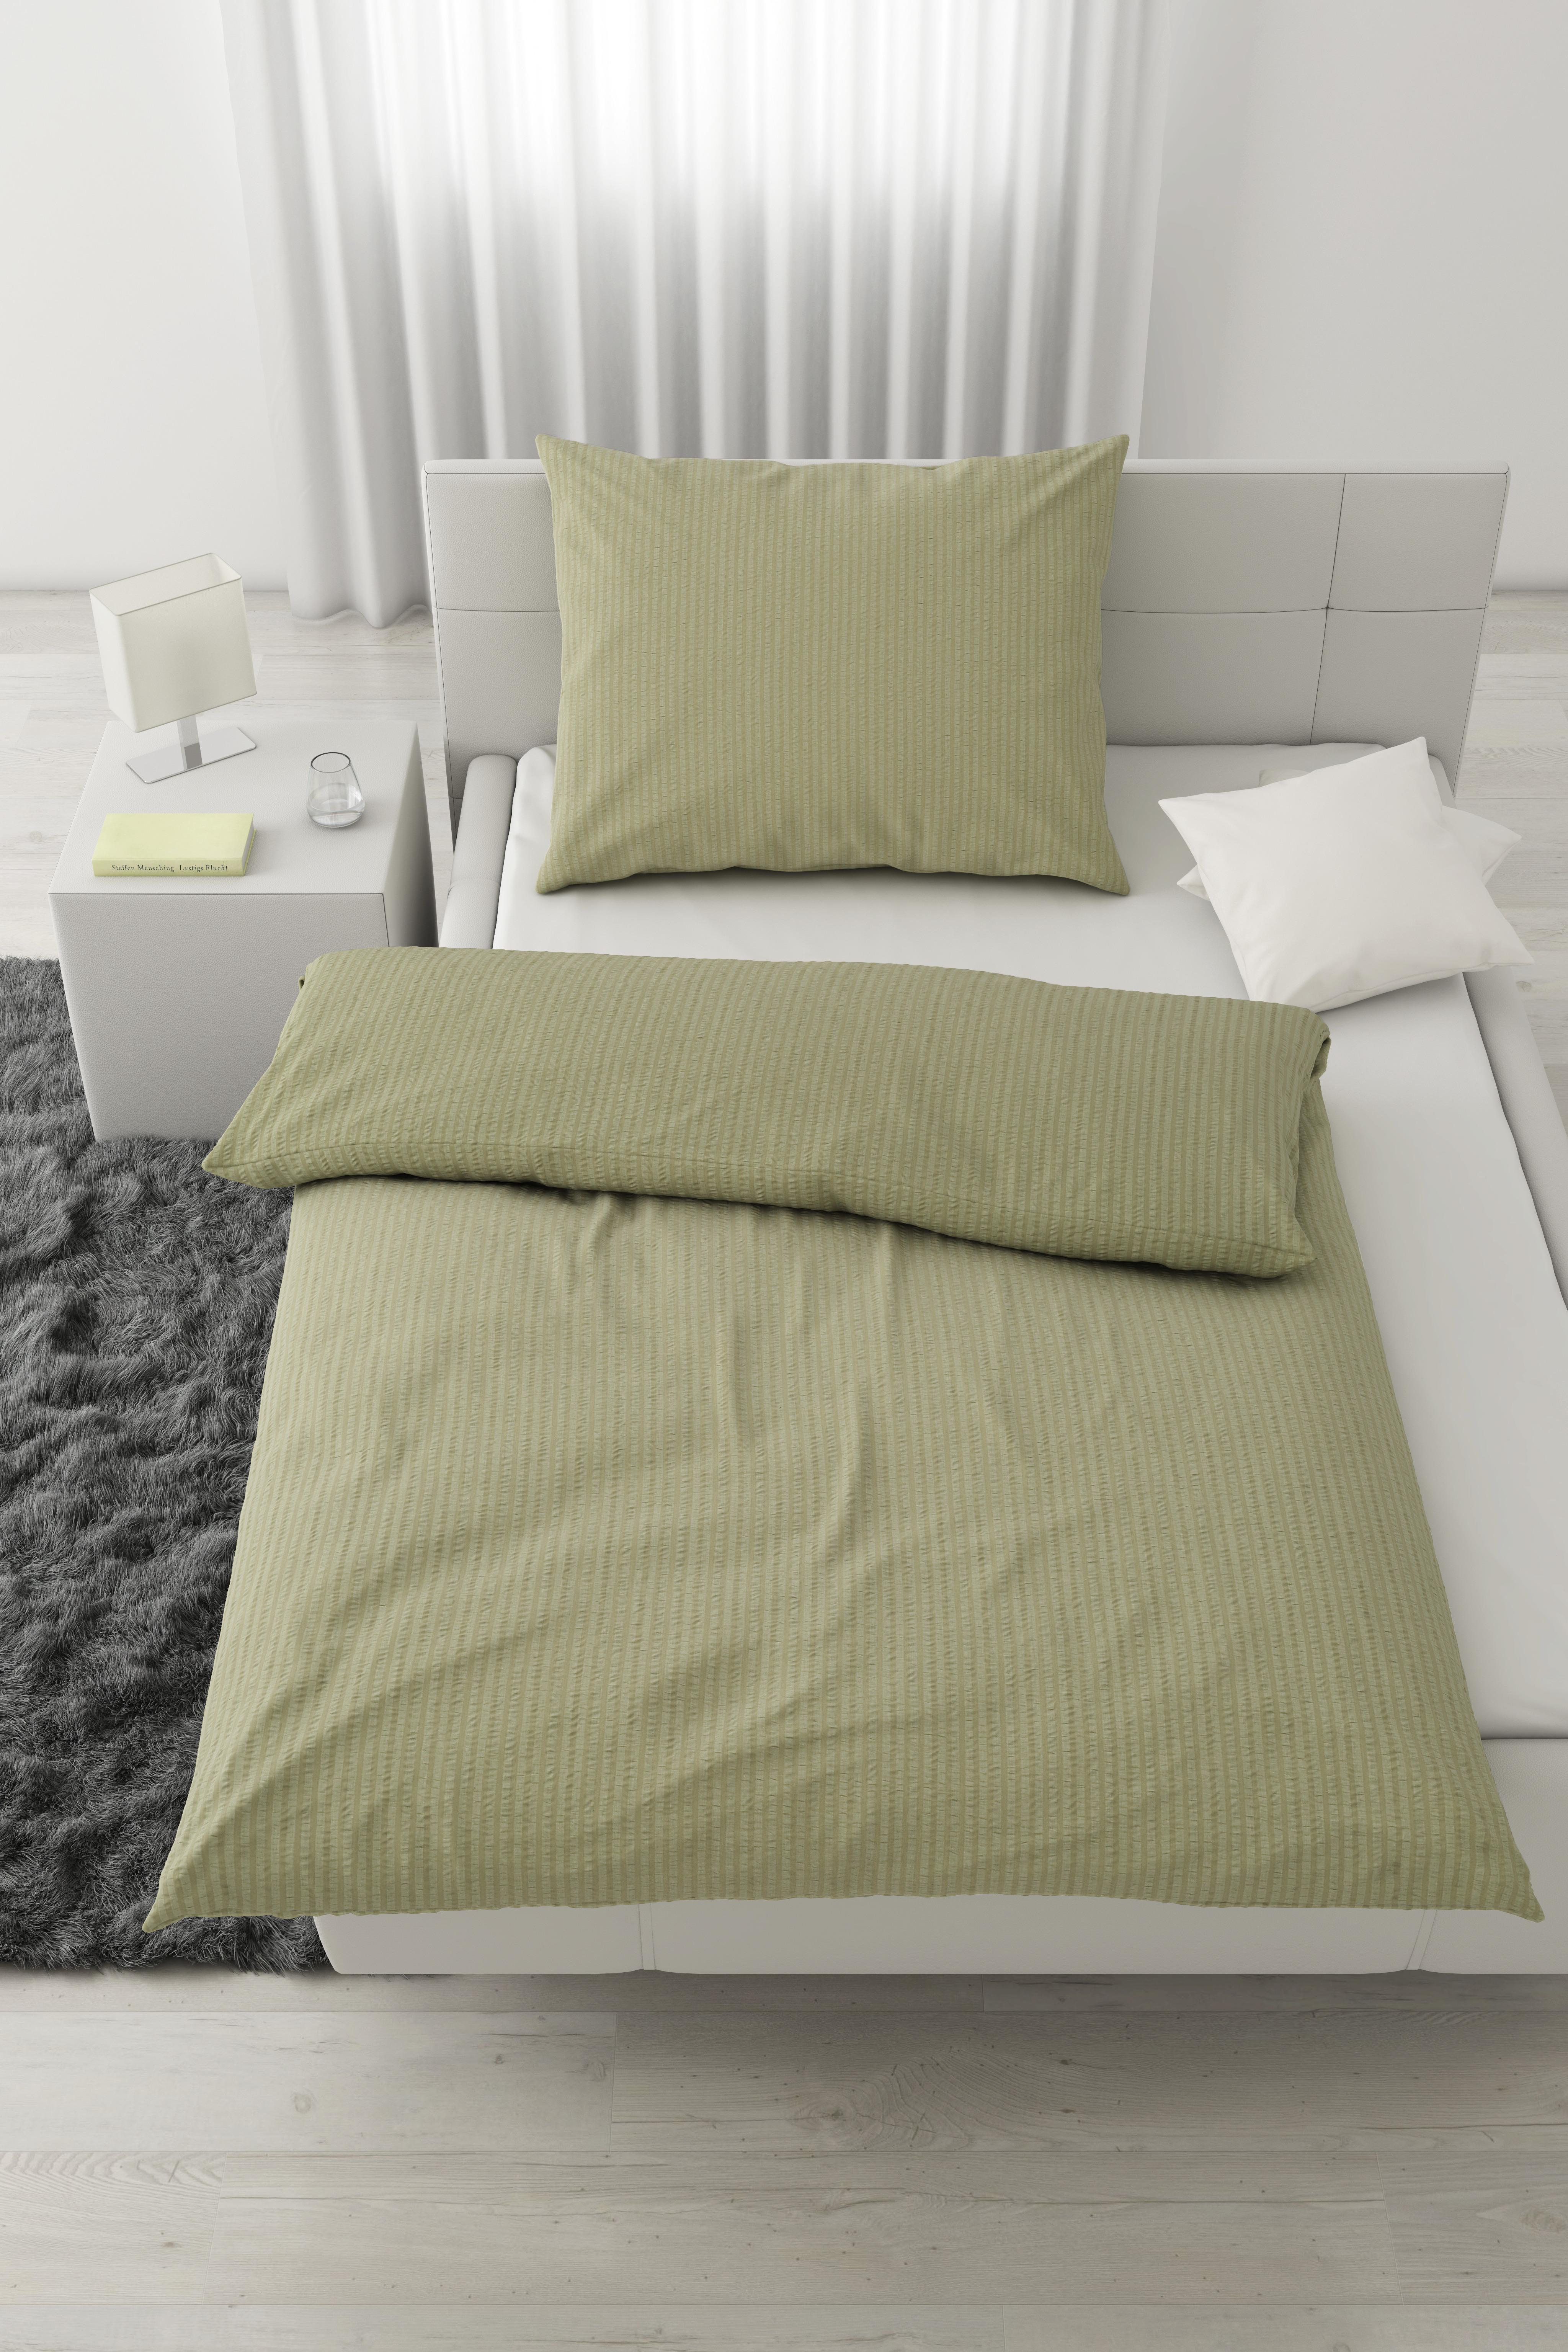 Povlečení Babs, 140/200cm, Oliv. Zelená - olivově zelená, Moderní, textil (140/200cm) - Modern Living